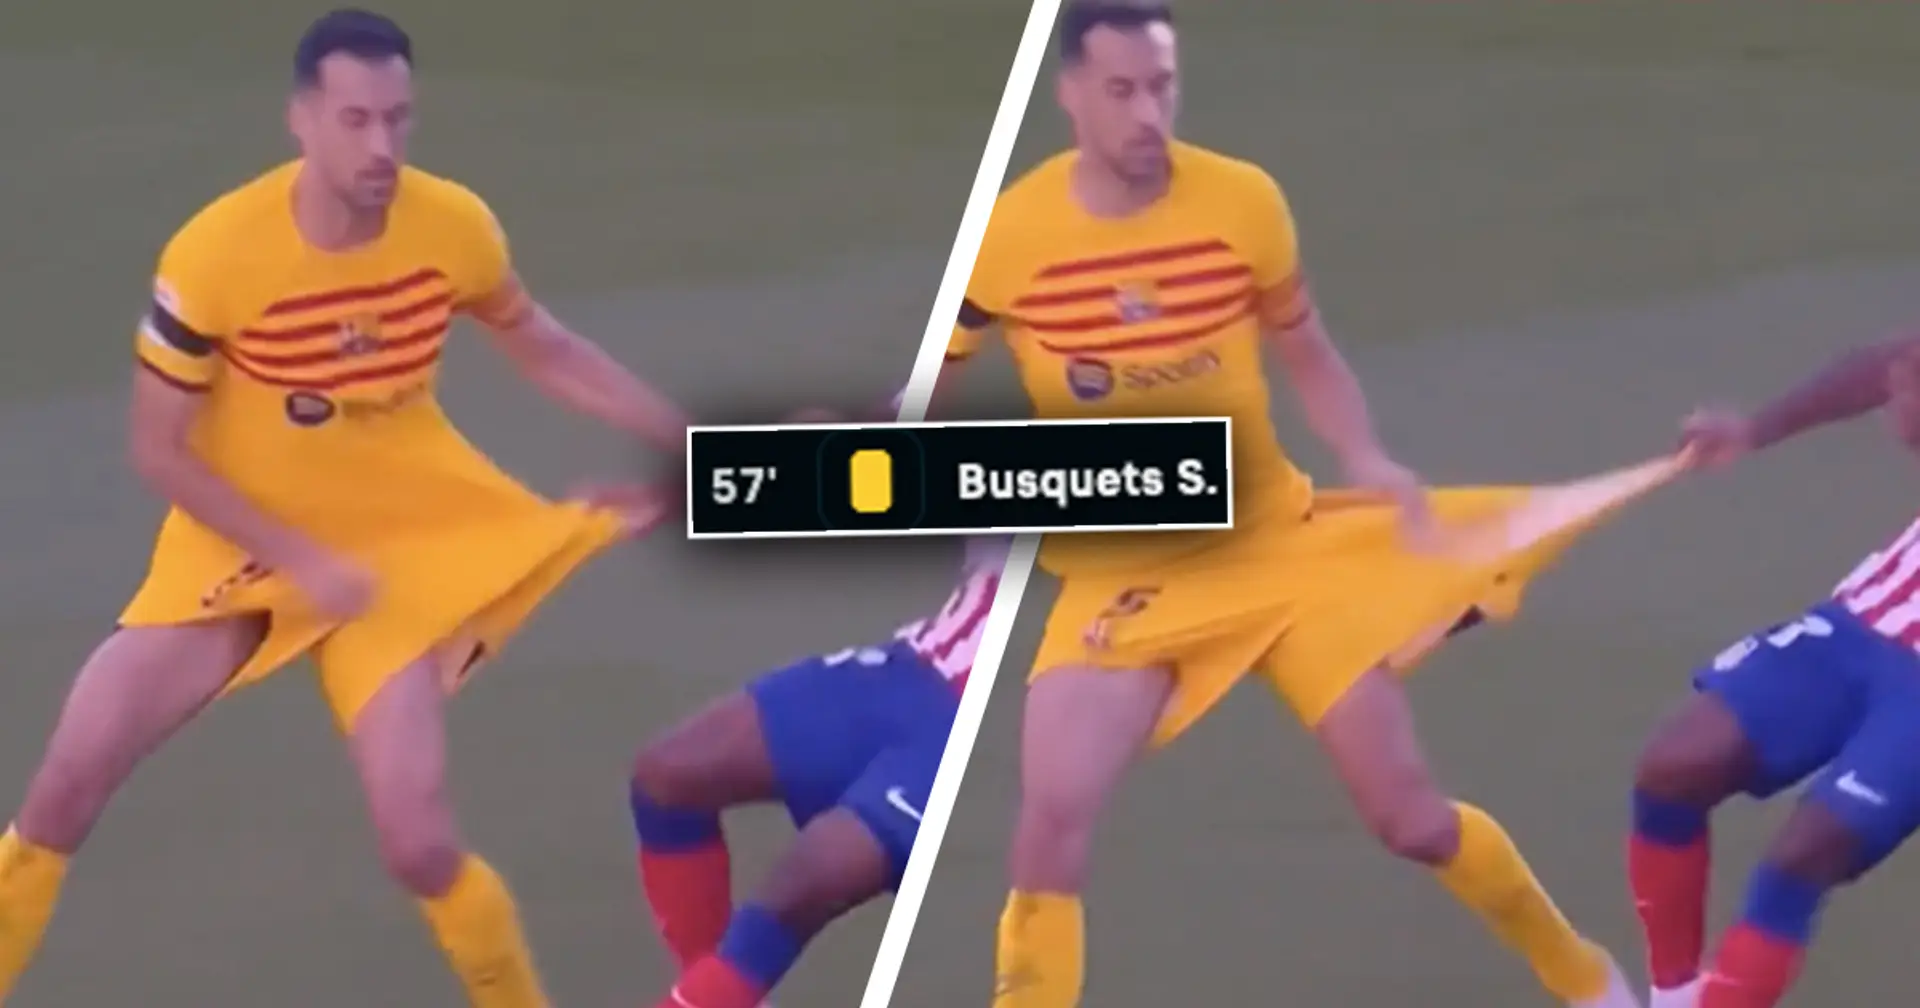 Mit der Kamera erwischt: Lemar zerreißt Busquets' Shorts, Barça-Veteran erhält Verwarnung